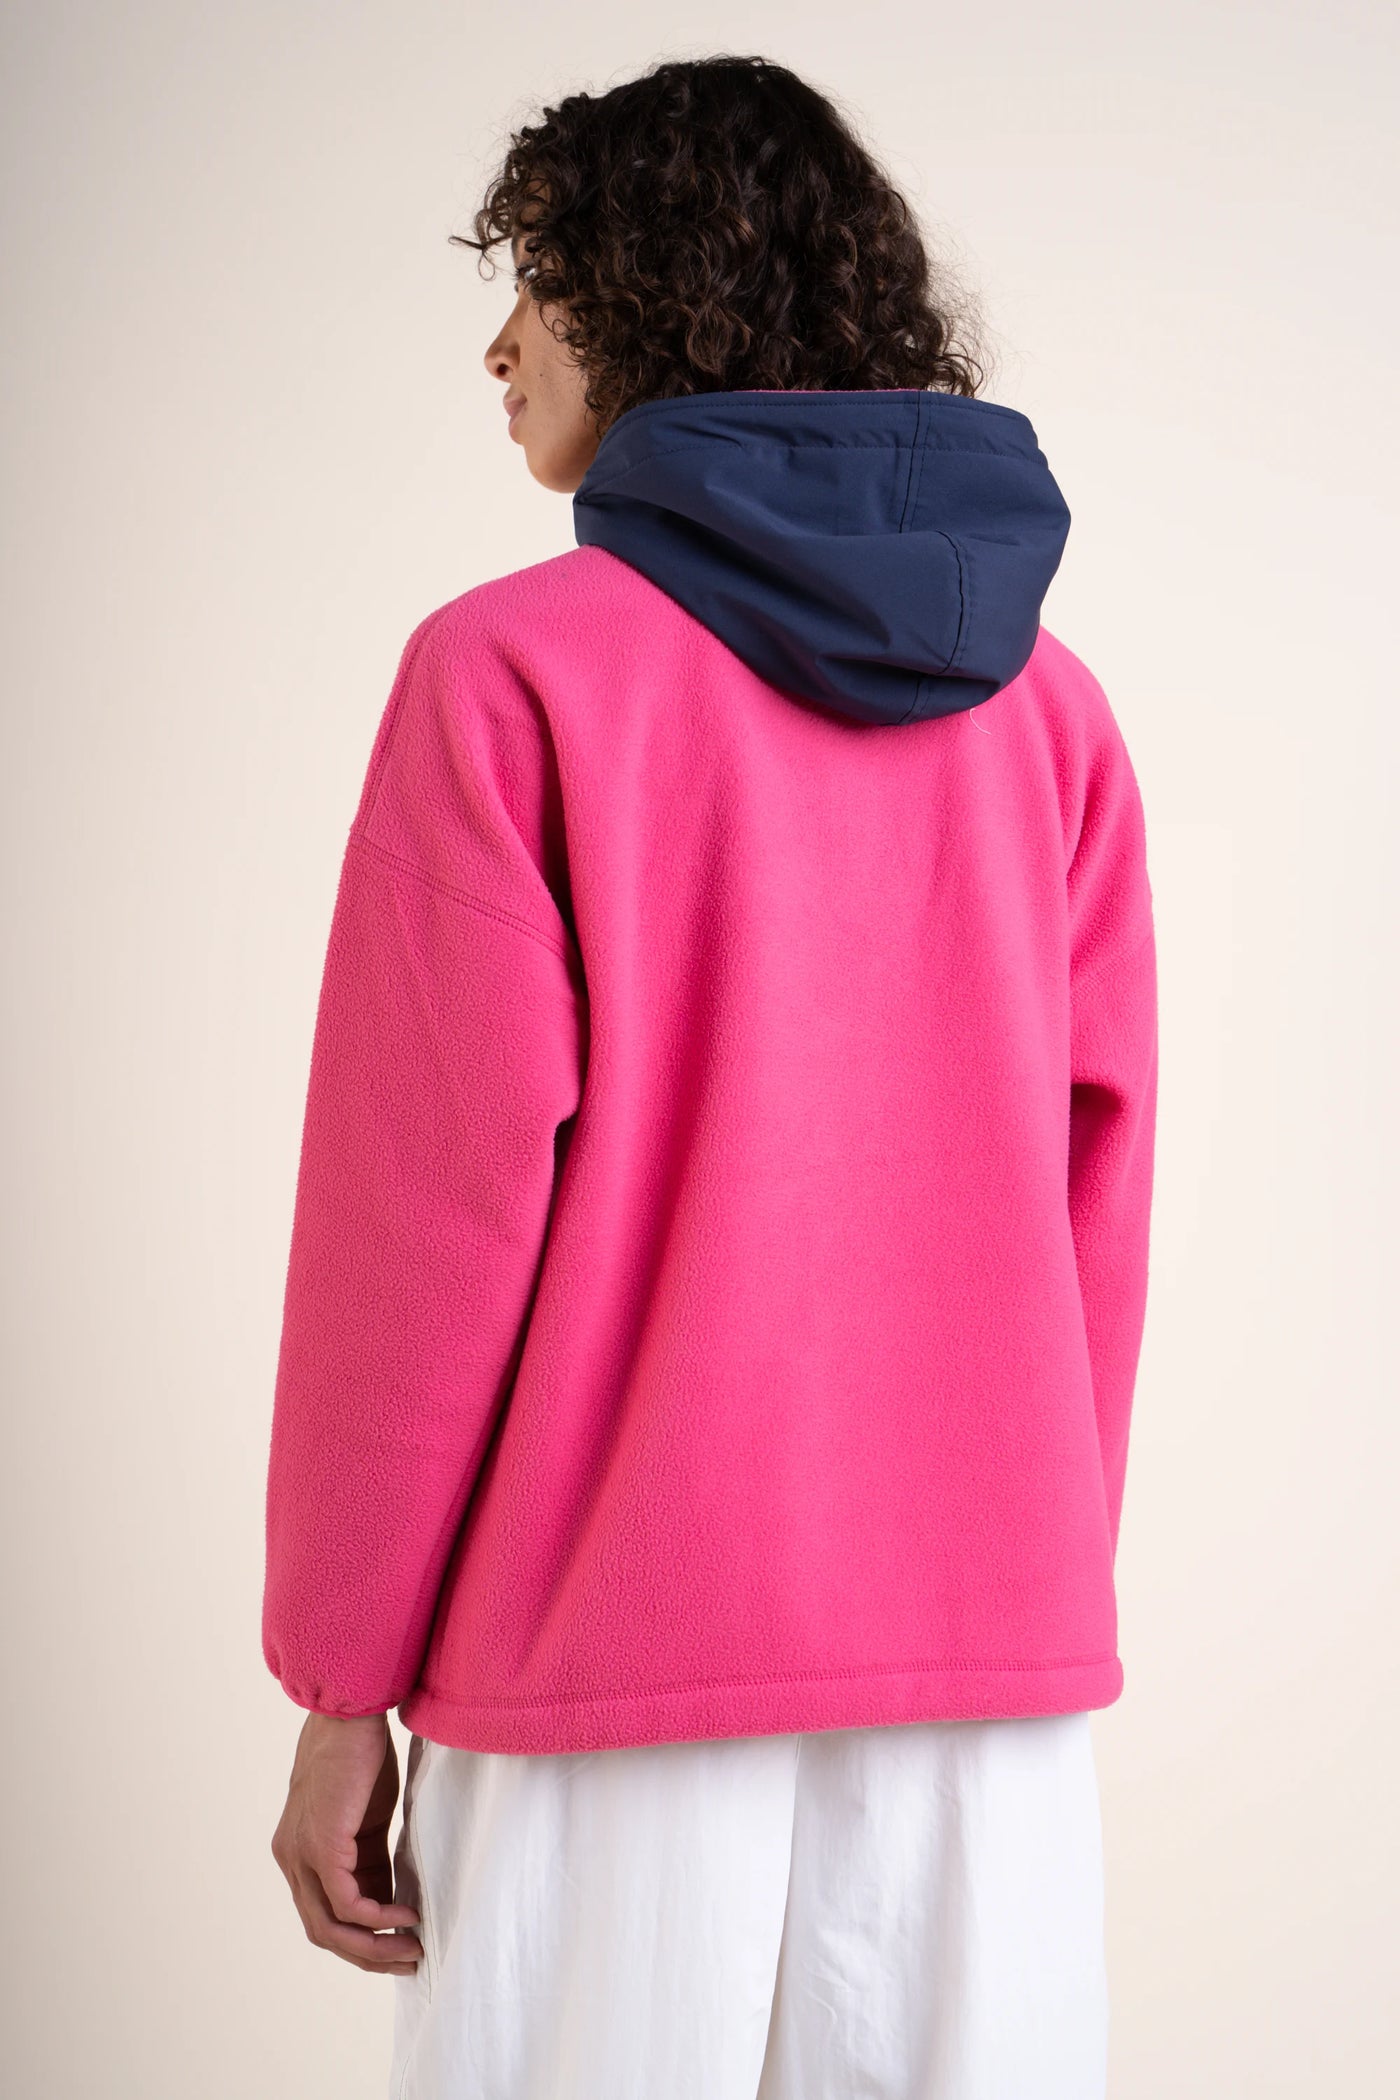 Belleville - Waterproof fleece hoodie - Flotte #couleur_fuschia